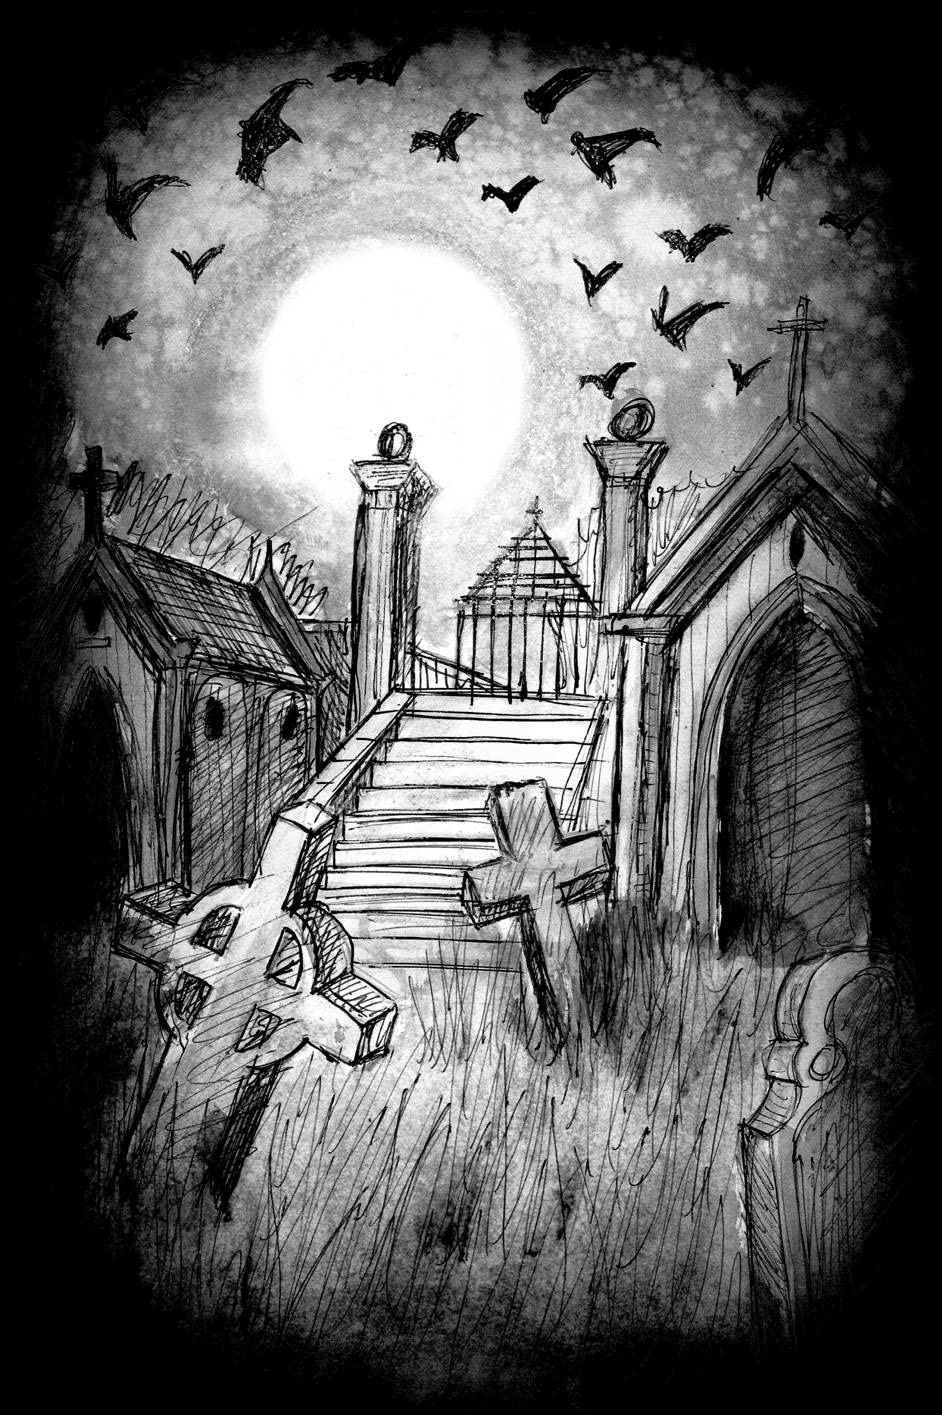 Children's Books gothic novels fiction epic fantasy dark horror